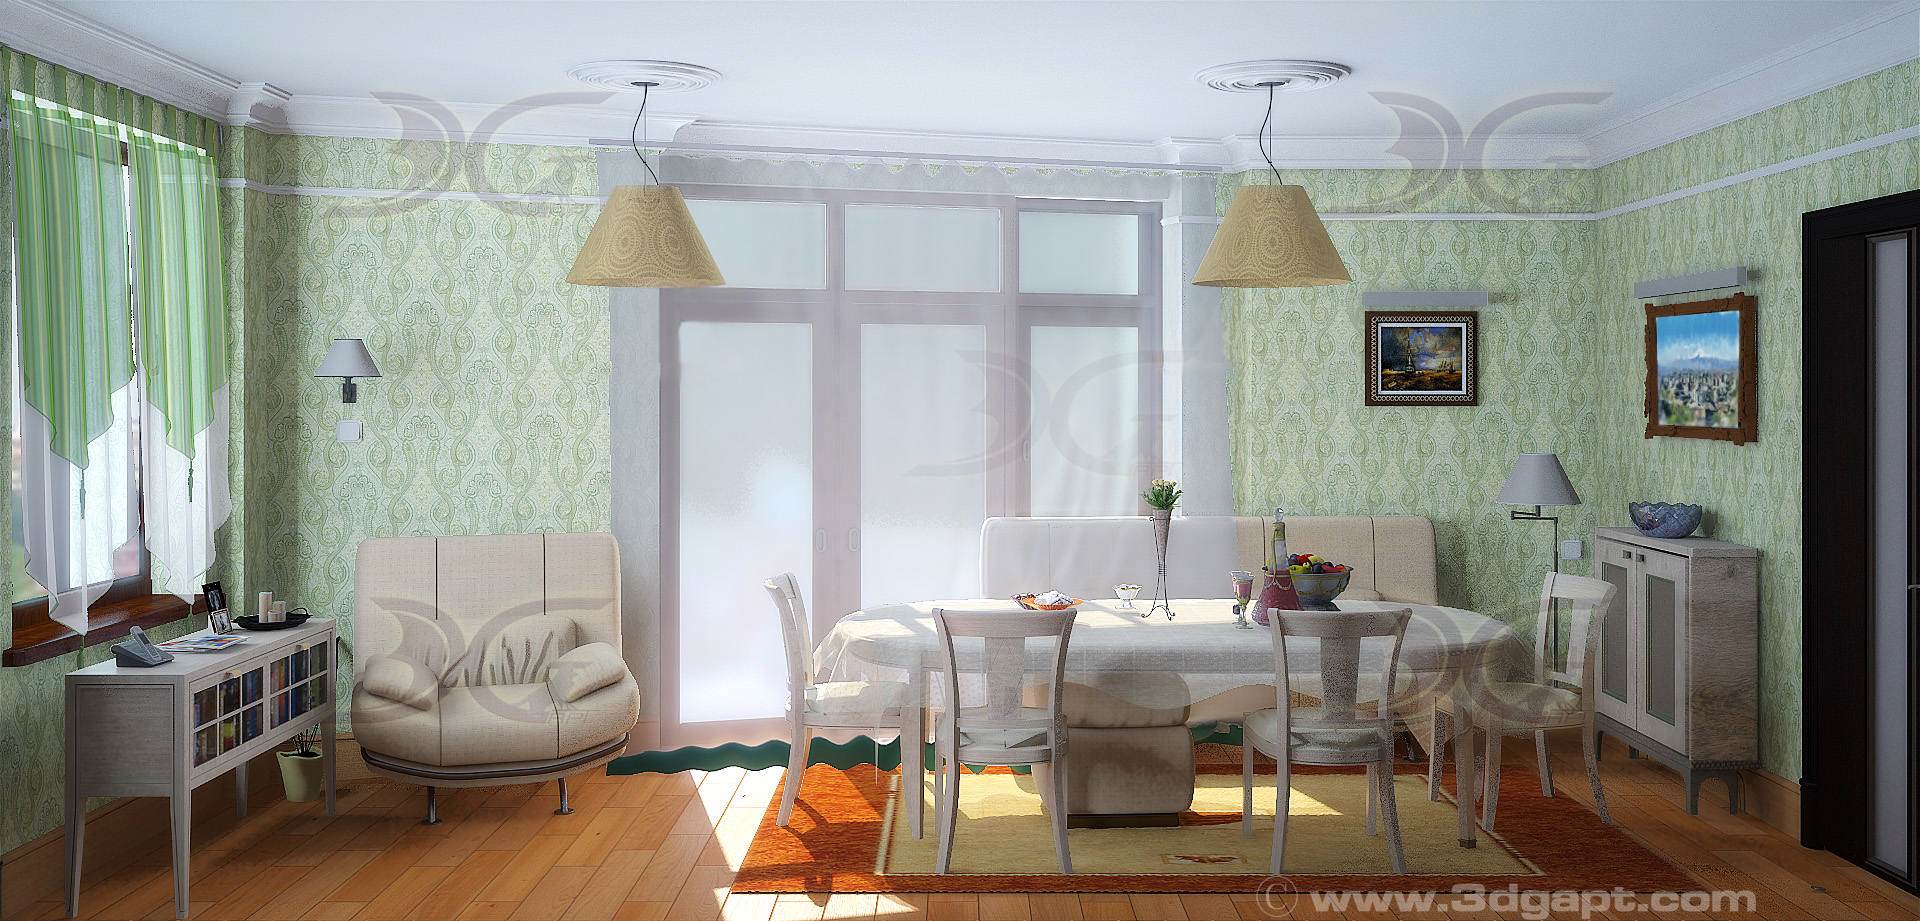 Architecture Interior Dining Room 14